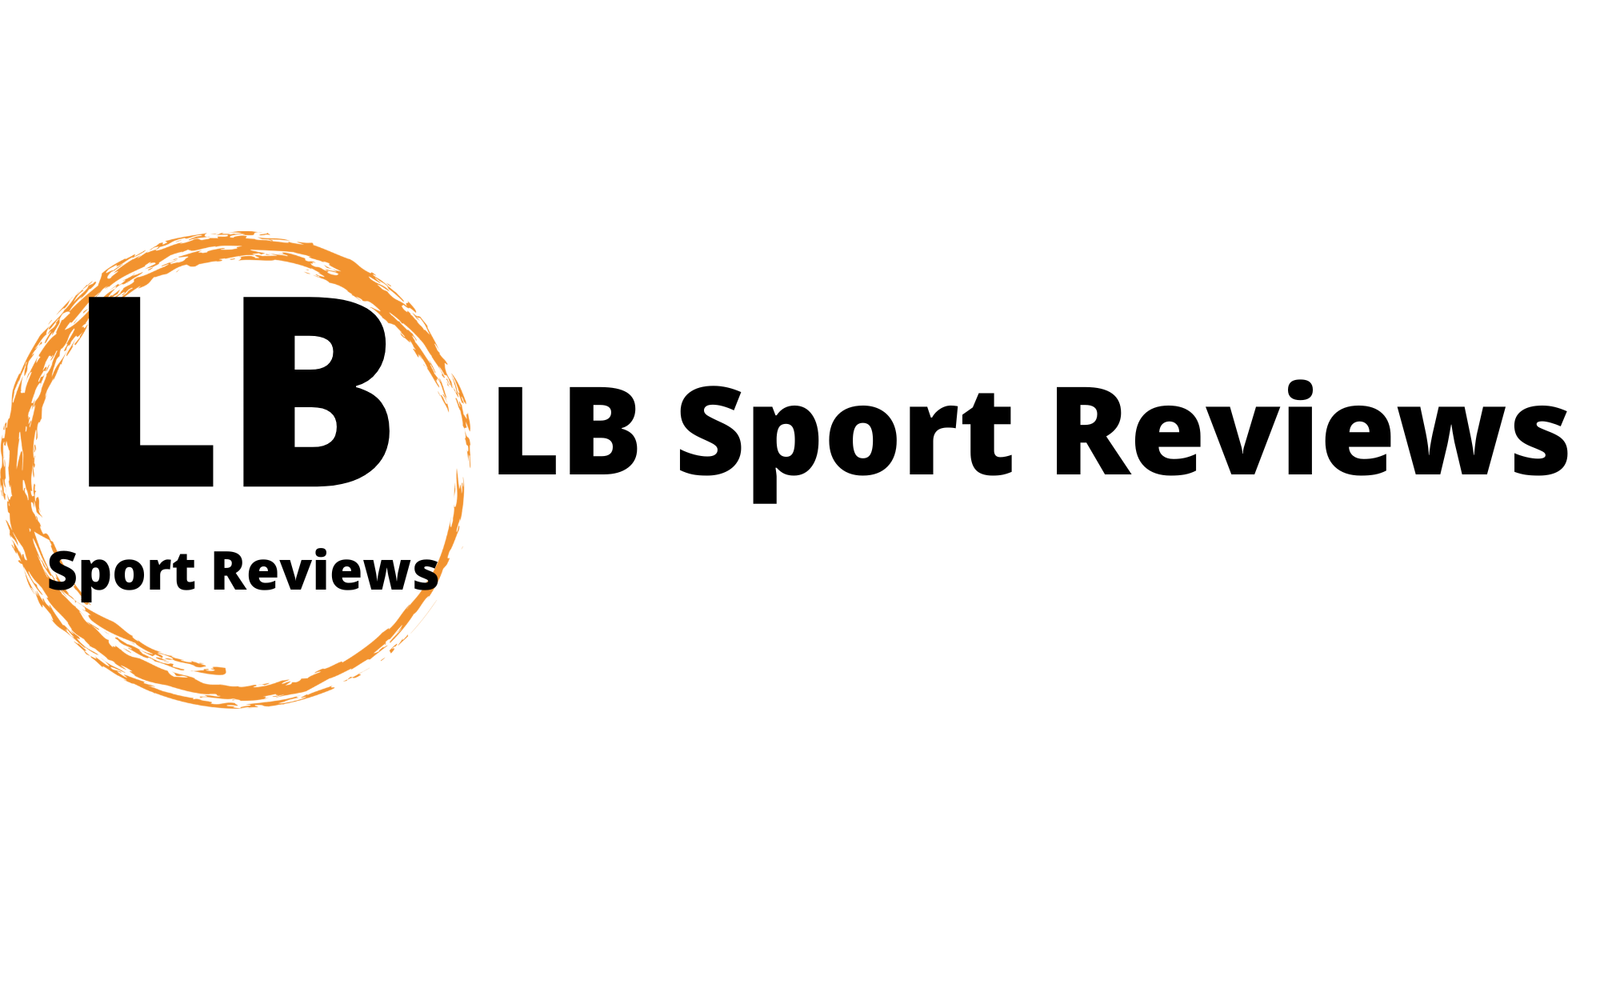 LB Sport Reviews